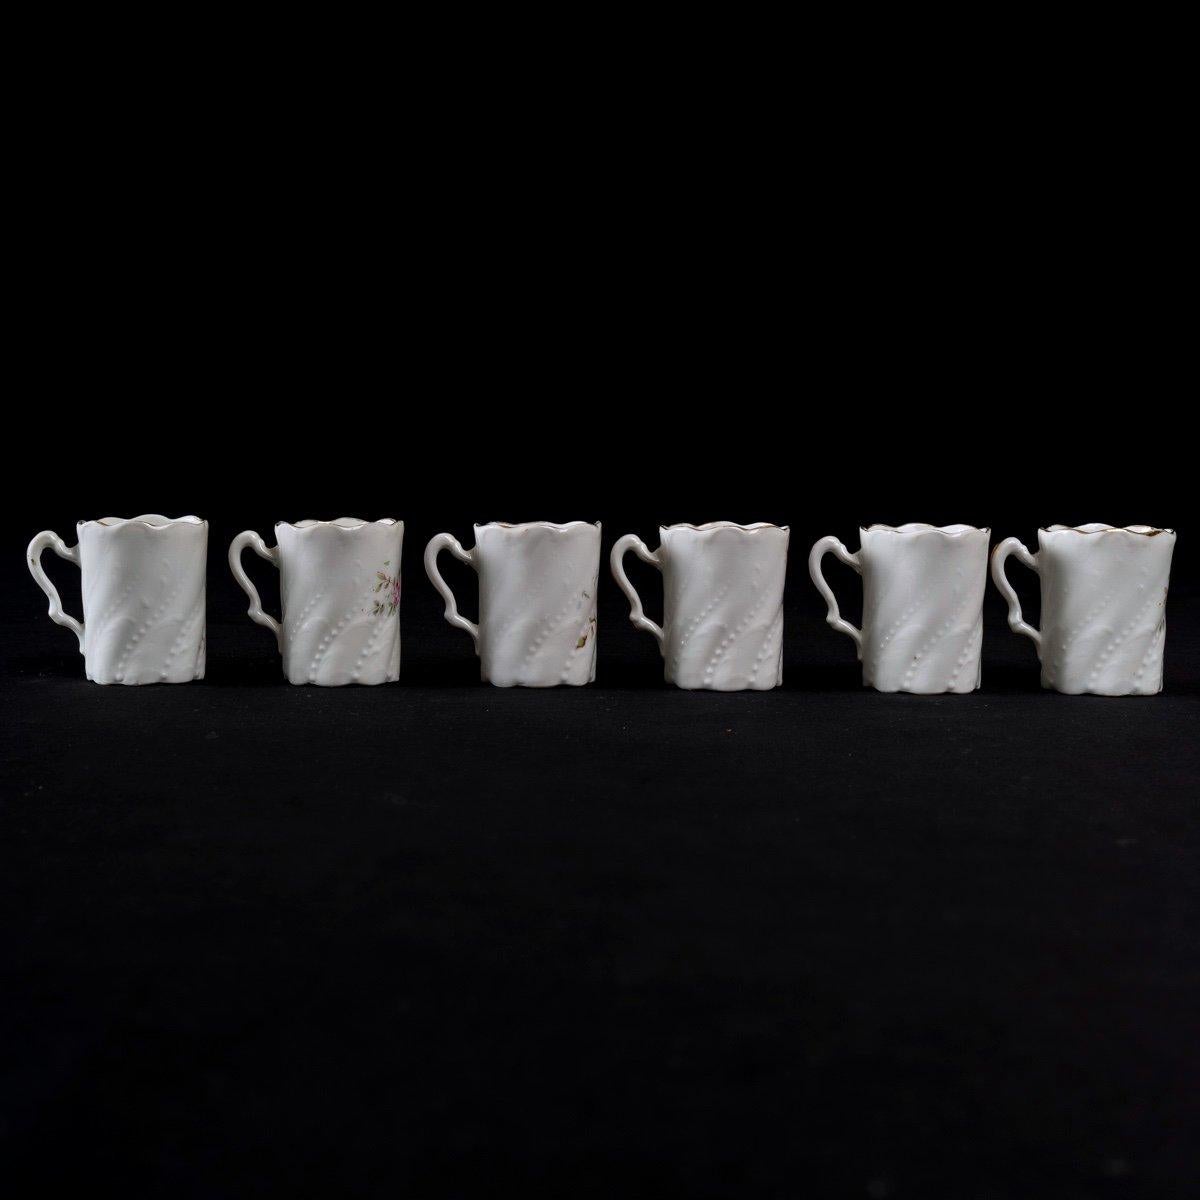 Mocha Service - Six Cups - Sèvres Porcelain - Period: Art Nouveau For Sale 9